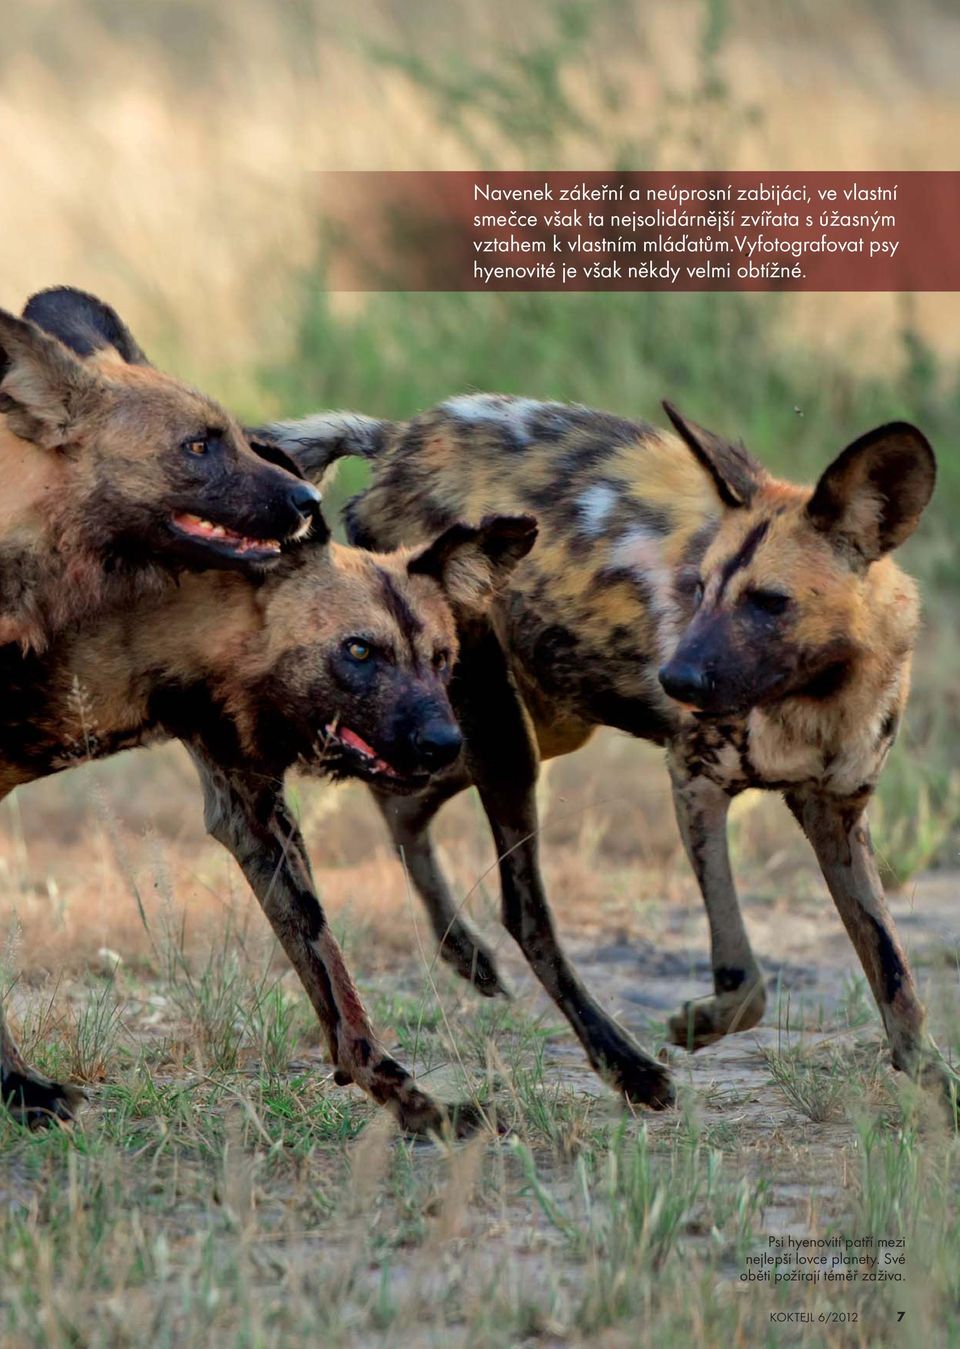 vyfotografovat psy hyenovité je však někdy velmi obtížné.